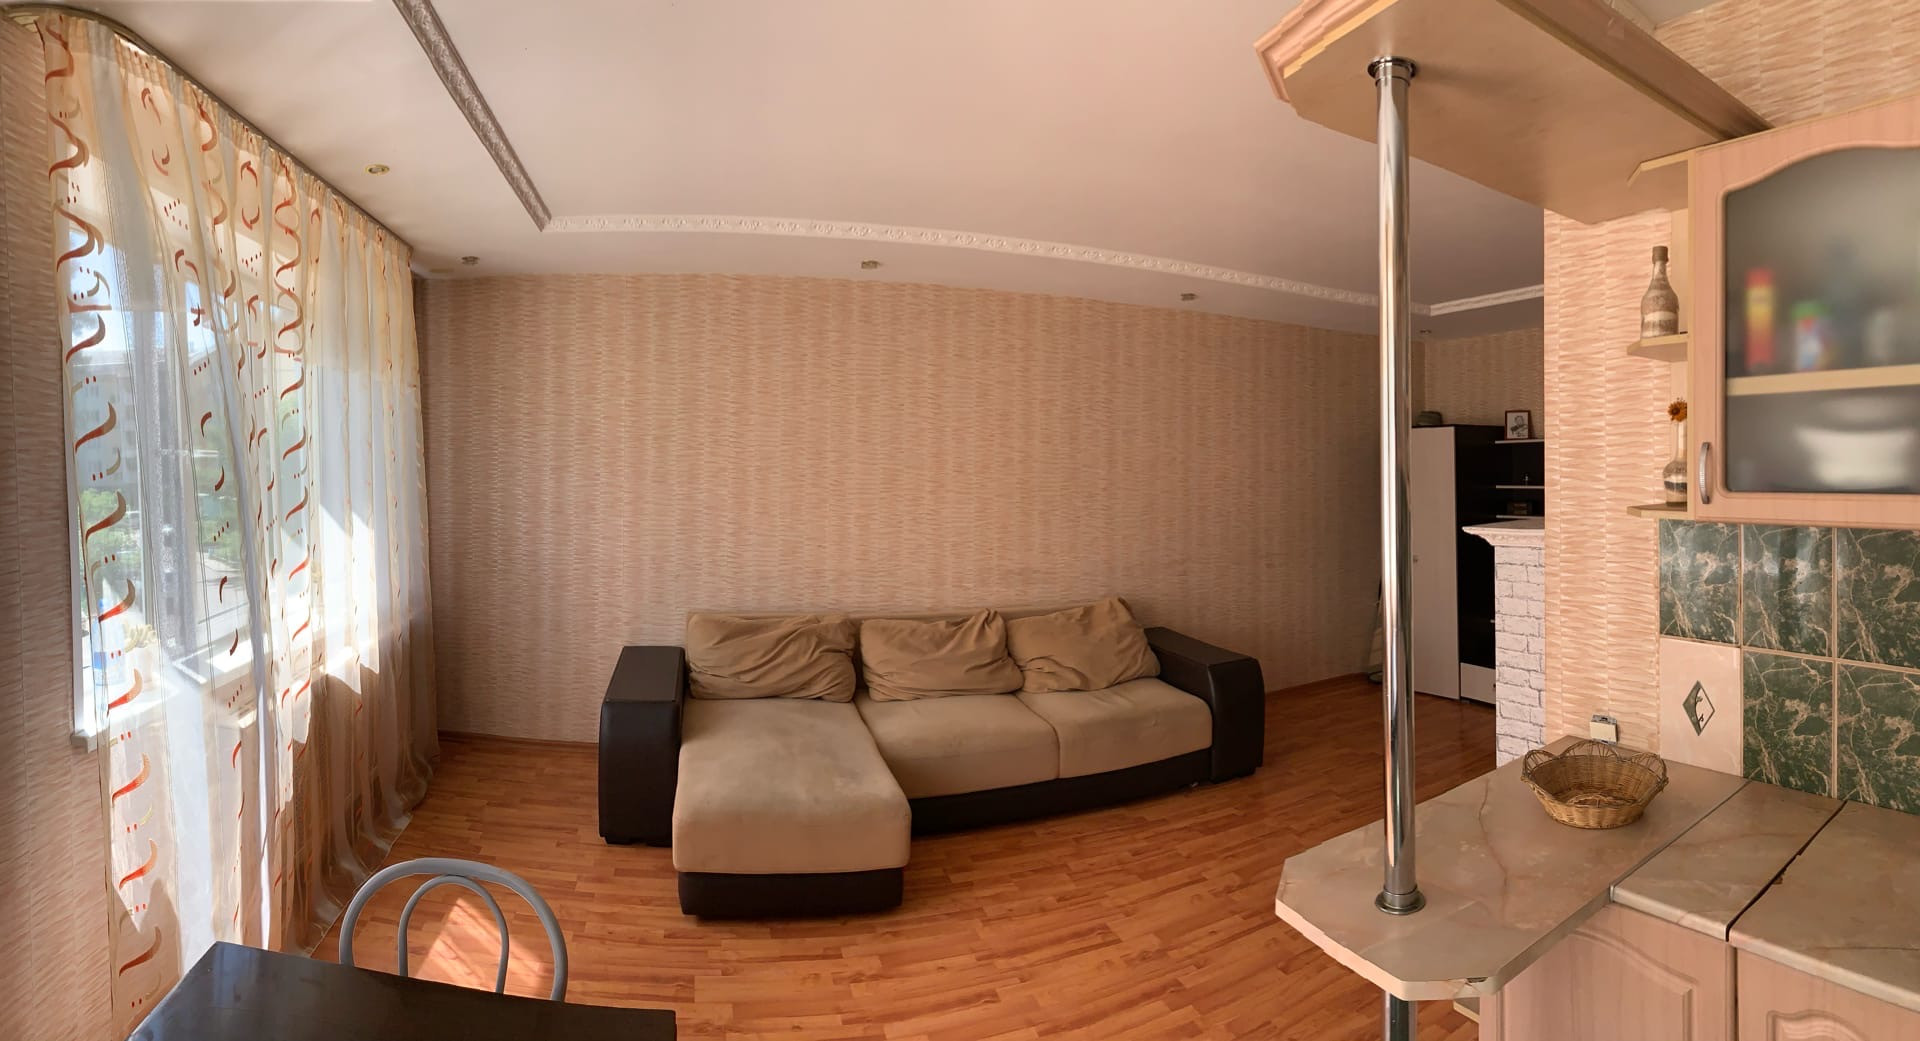 Купить квартиру в железногорске красноярского 2 комнатную